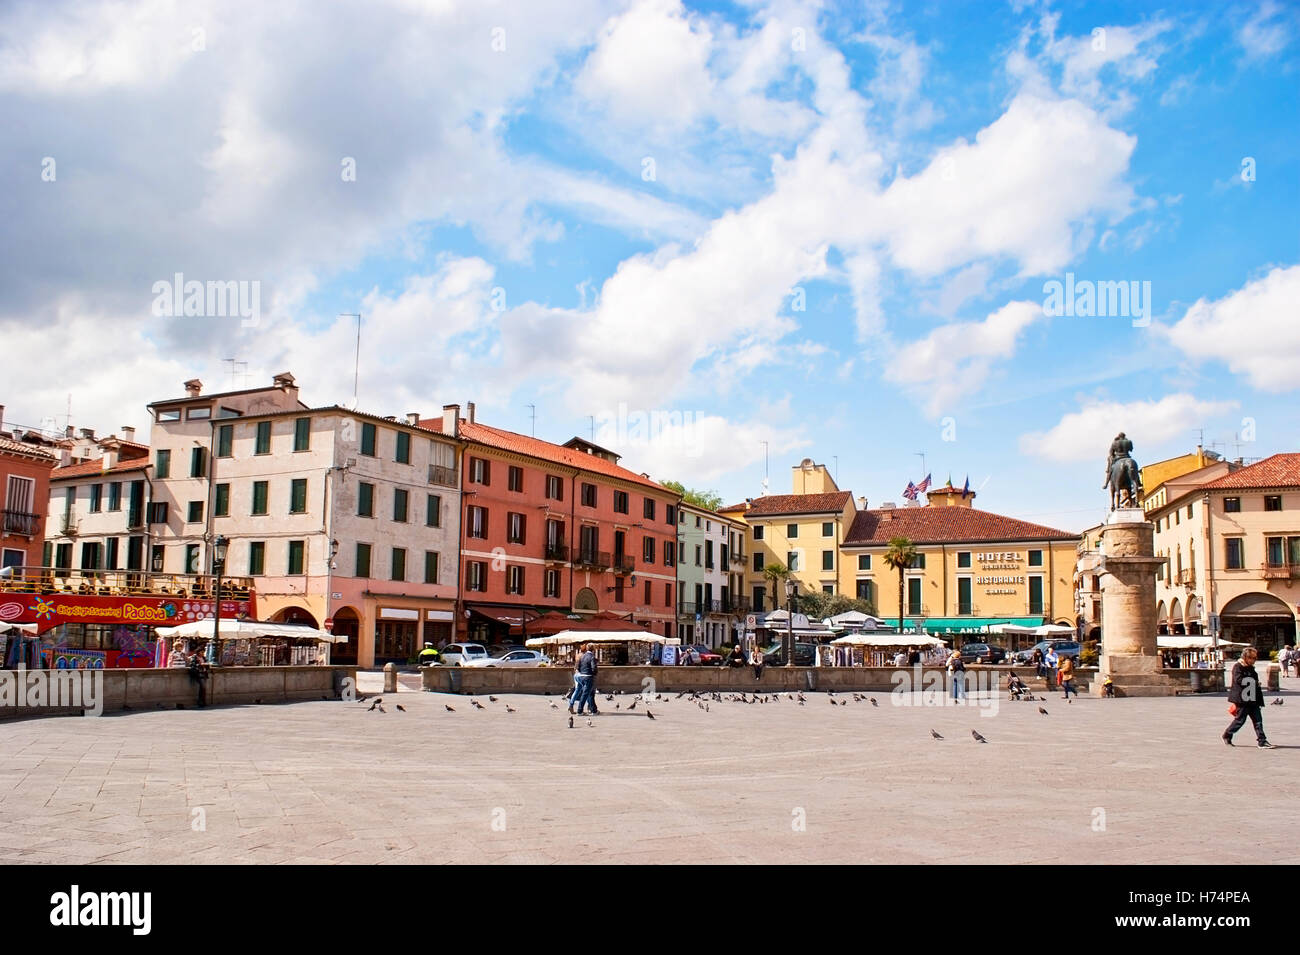 Piazza del Santo est la place animée, pleine de boutiques, cafés et les hôtels, avec statue équestre de Gattamelata de Donatello Banque D'Images